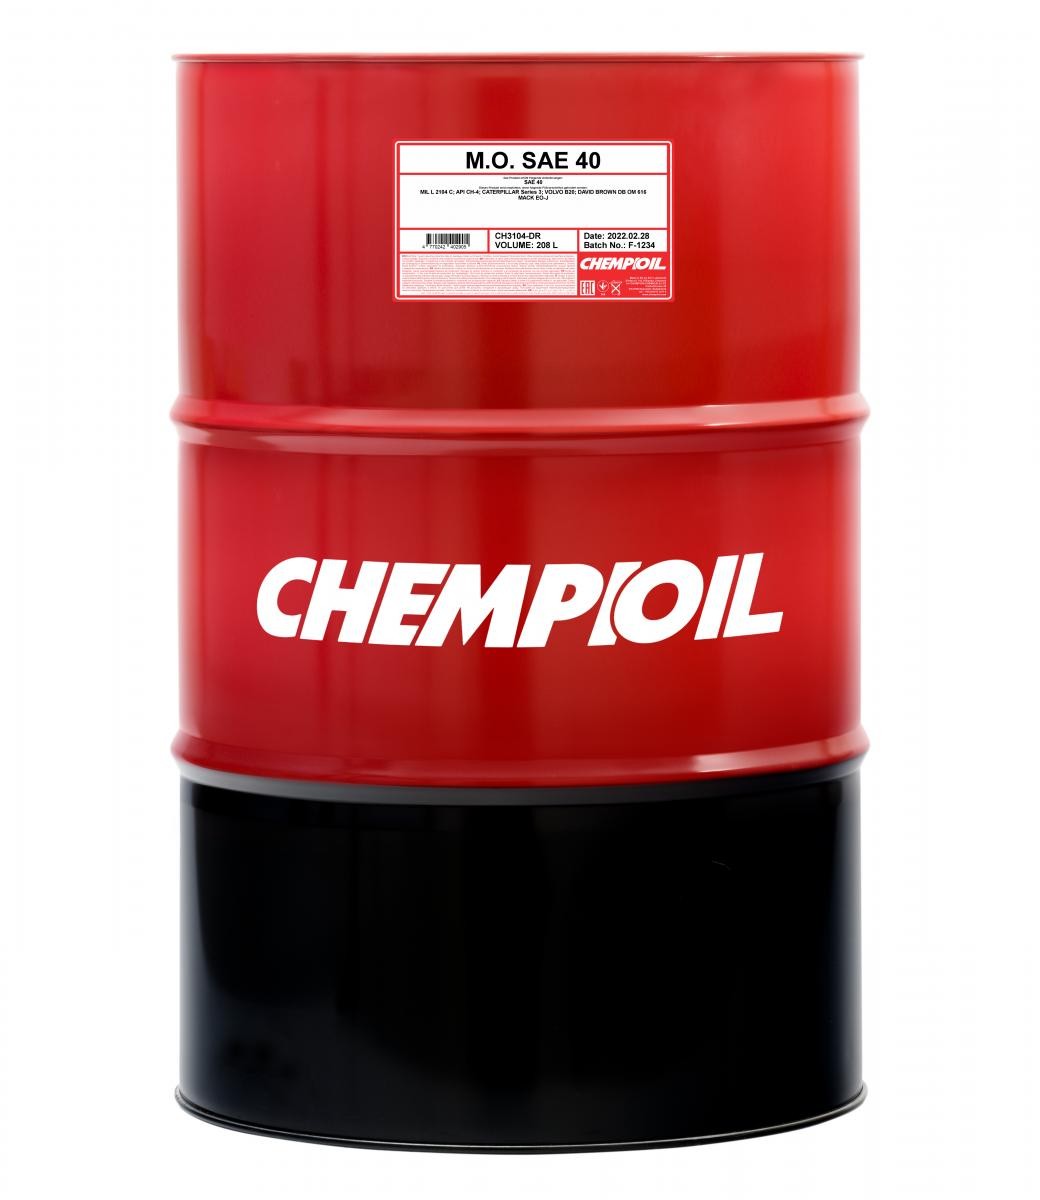 CHEMPIOIL M.O., SAE 40 CH3104-DR Engine oil SAE 40, 208l